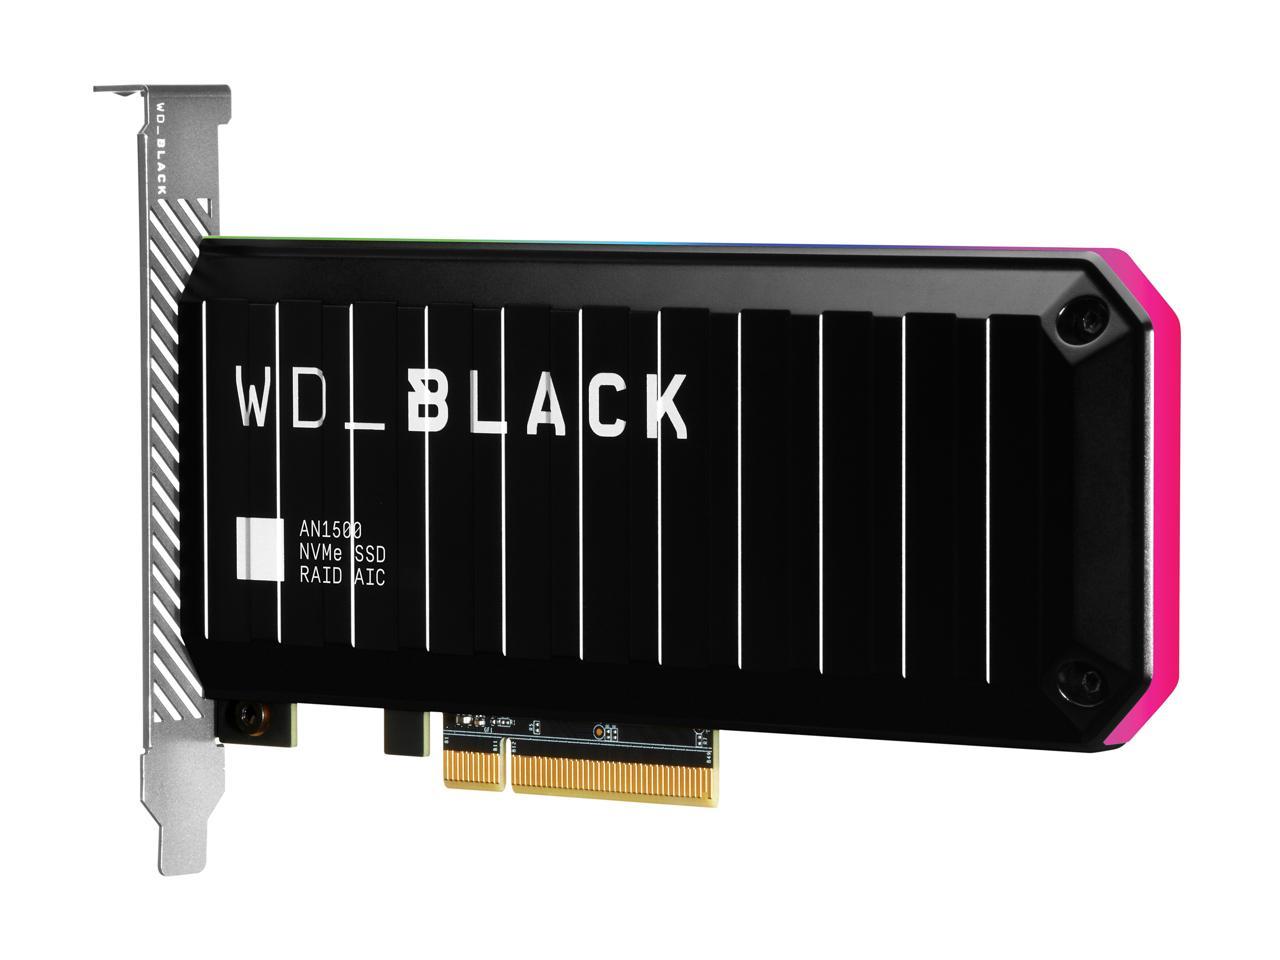 Western Digital WD BLACK AN1500 NVMe AIC 1TB PCI-Express 3.0 x8 Internal  Solid State Drive (SSD) WDS100T1X0L